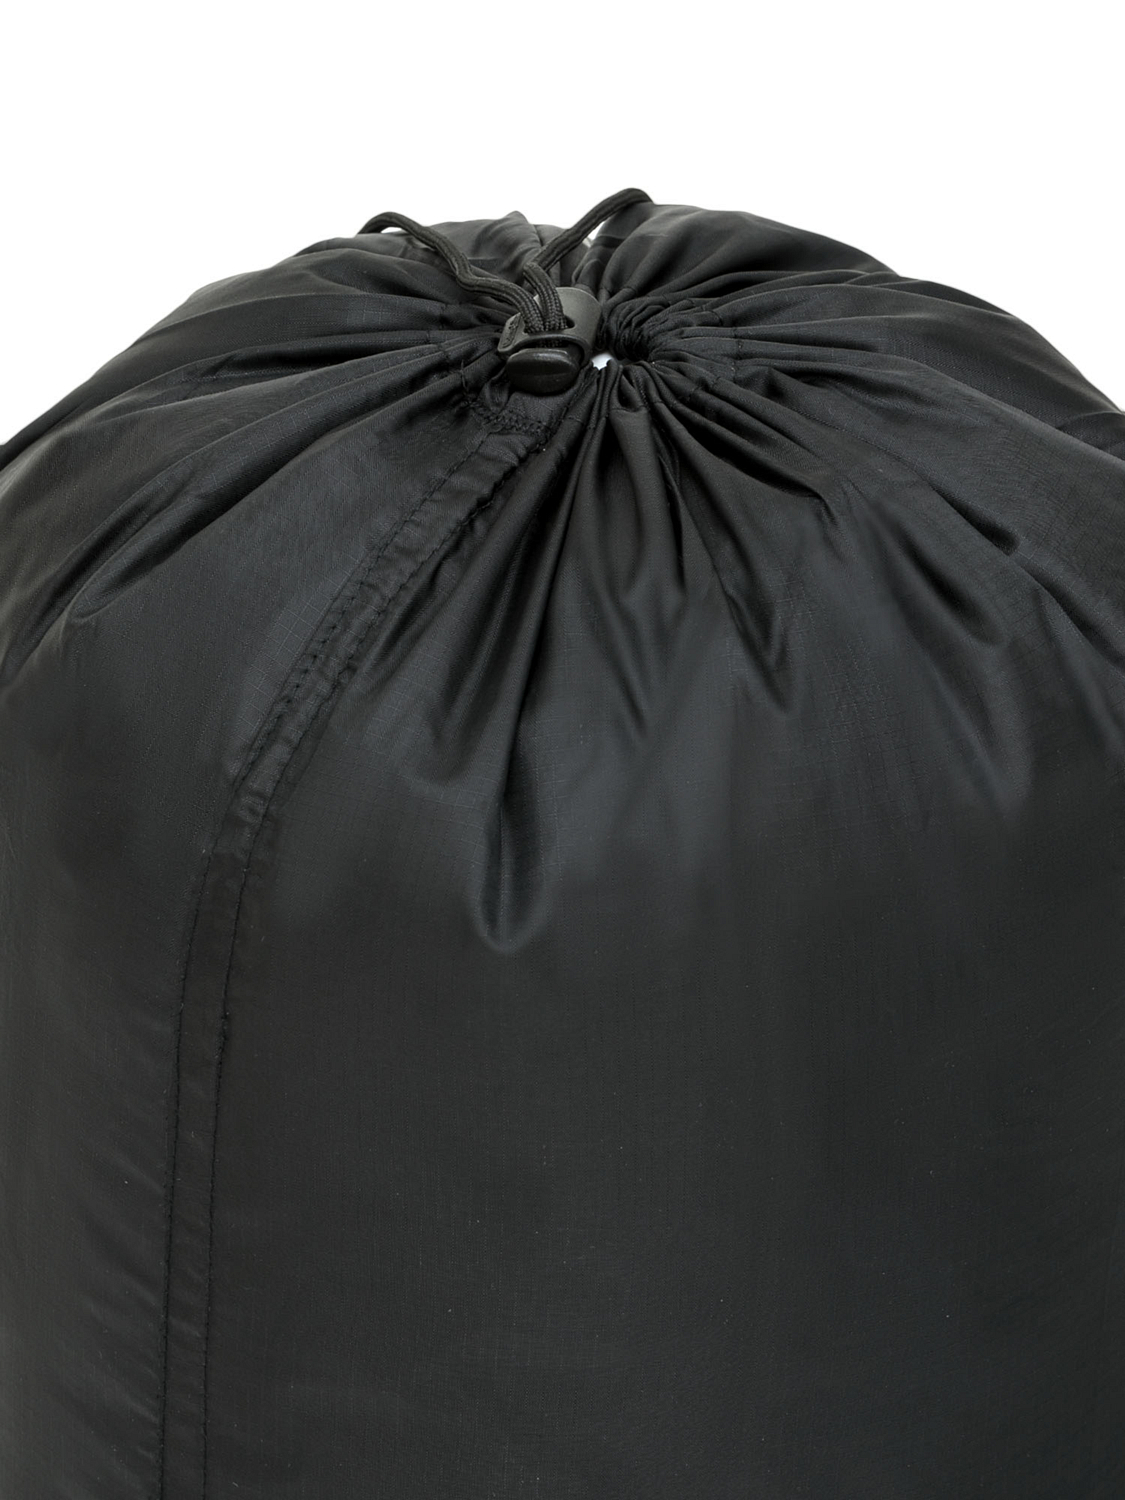 Мешок компрессионный Naturehike Down Sleeping Bag Compression Bag M